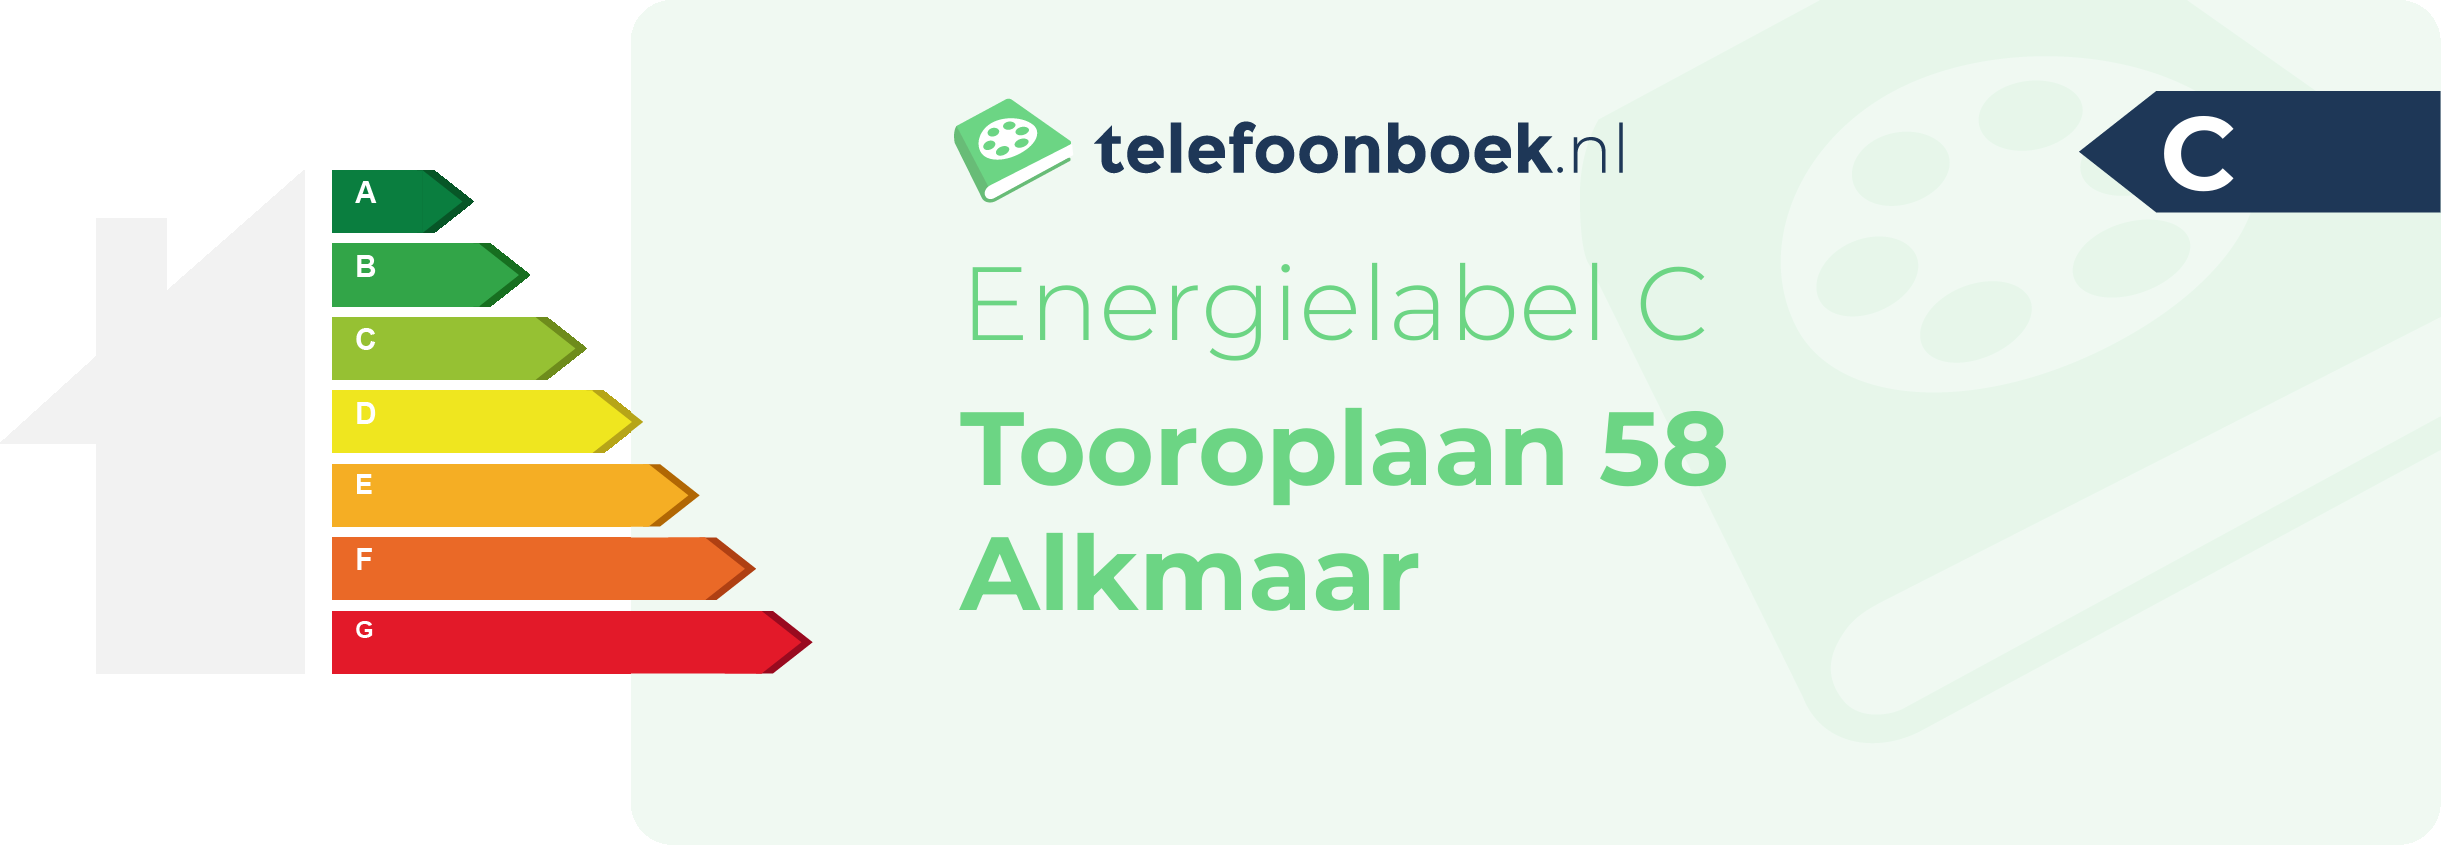 Energielabel Tooroplaan 58 Alkmaar